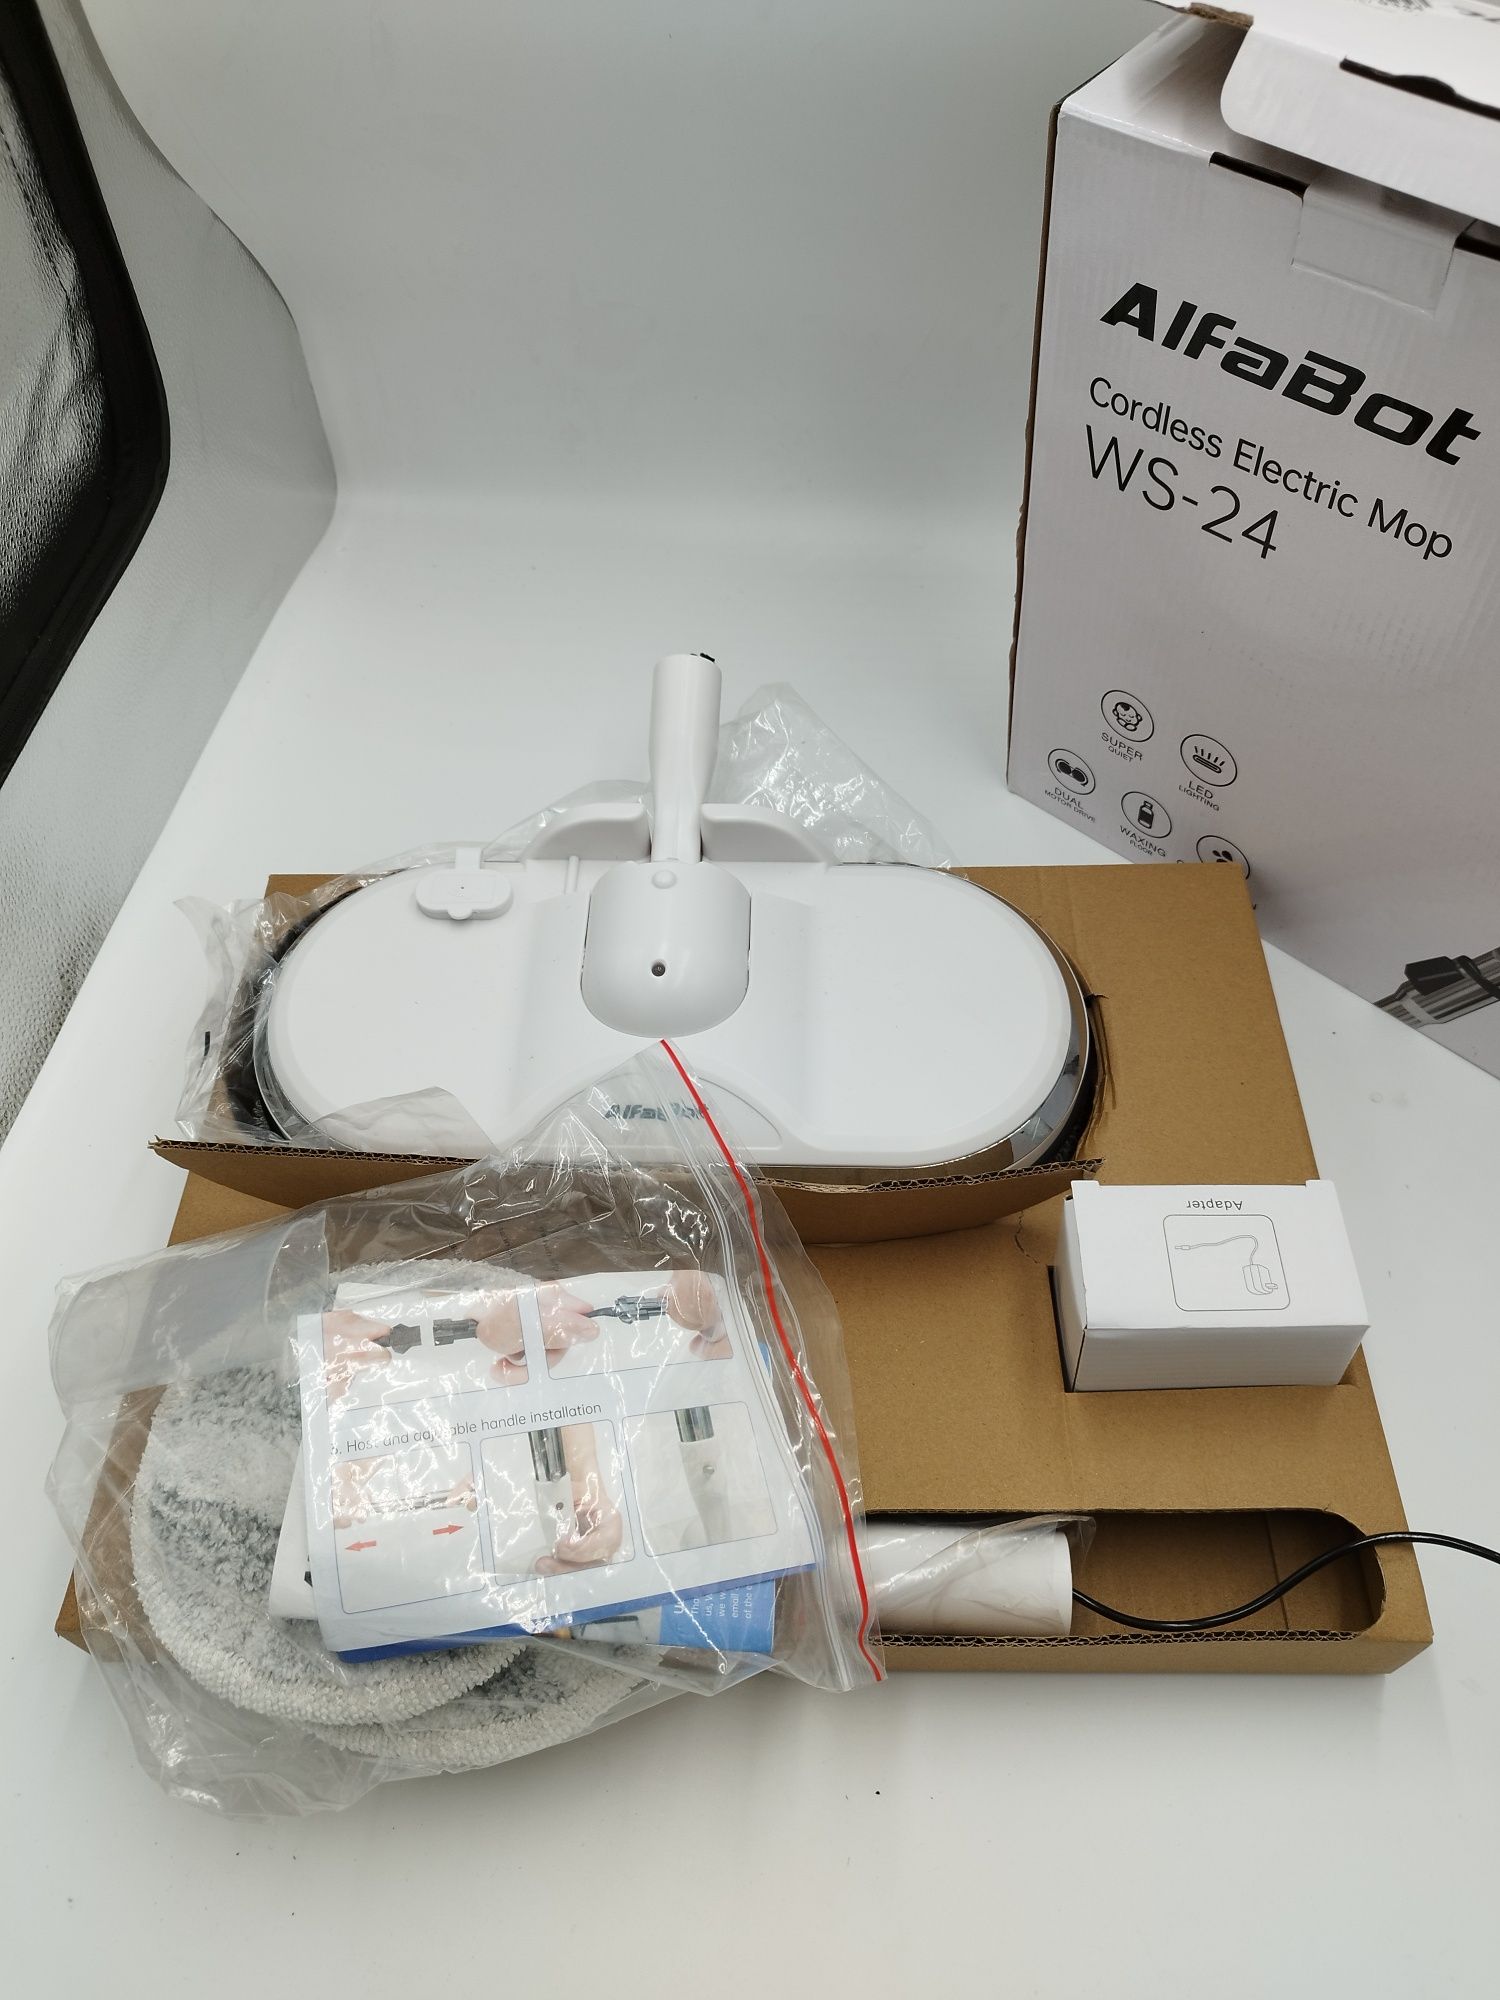 AlfaBot ws-24 mop elektryczny bezprzewodowy